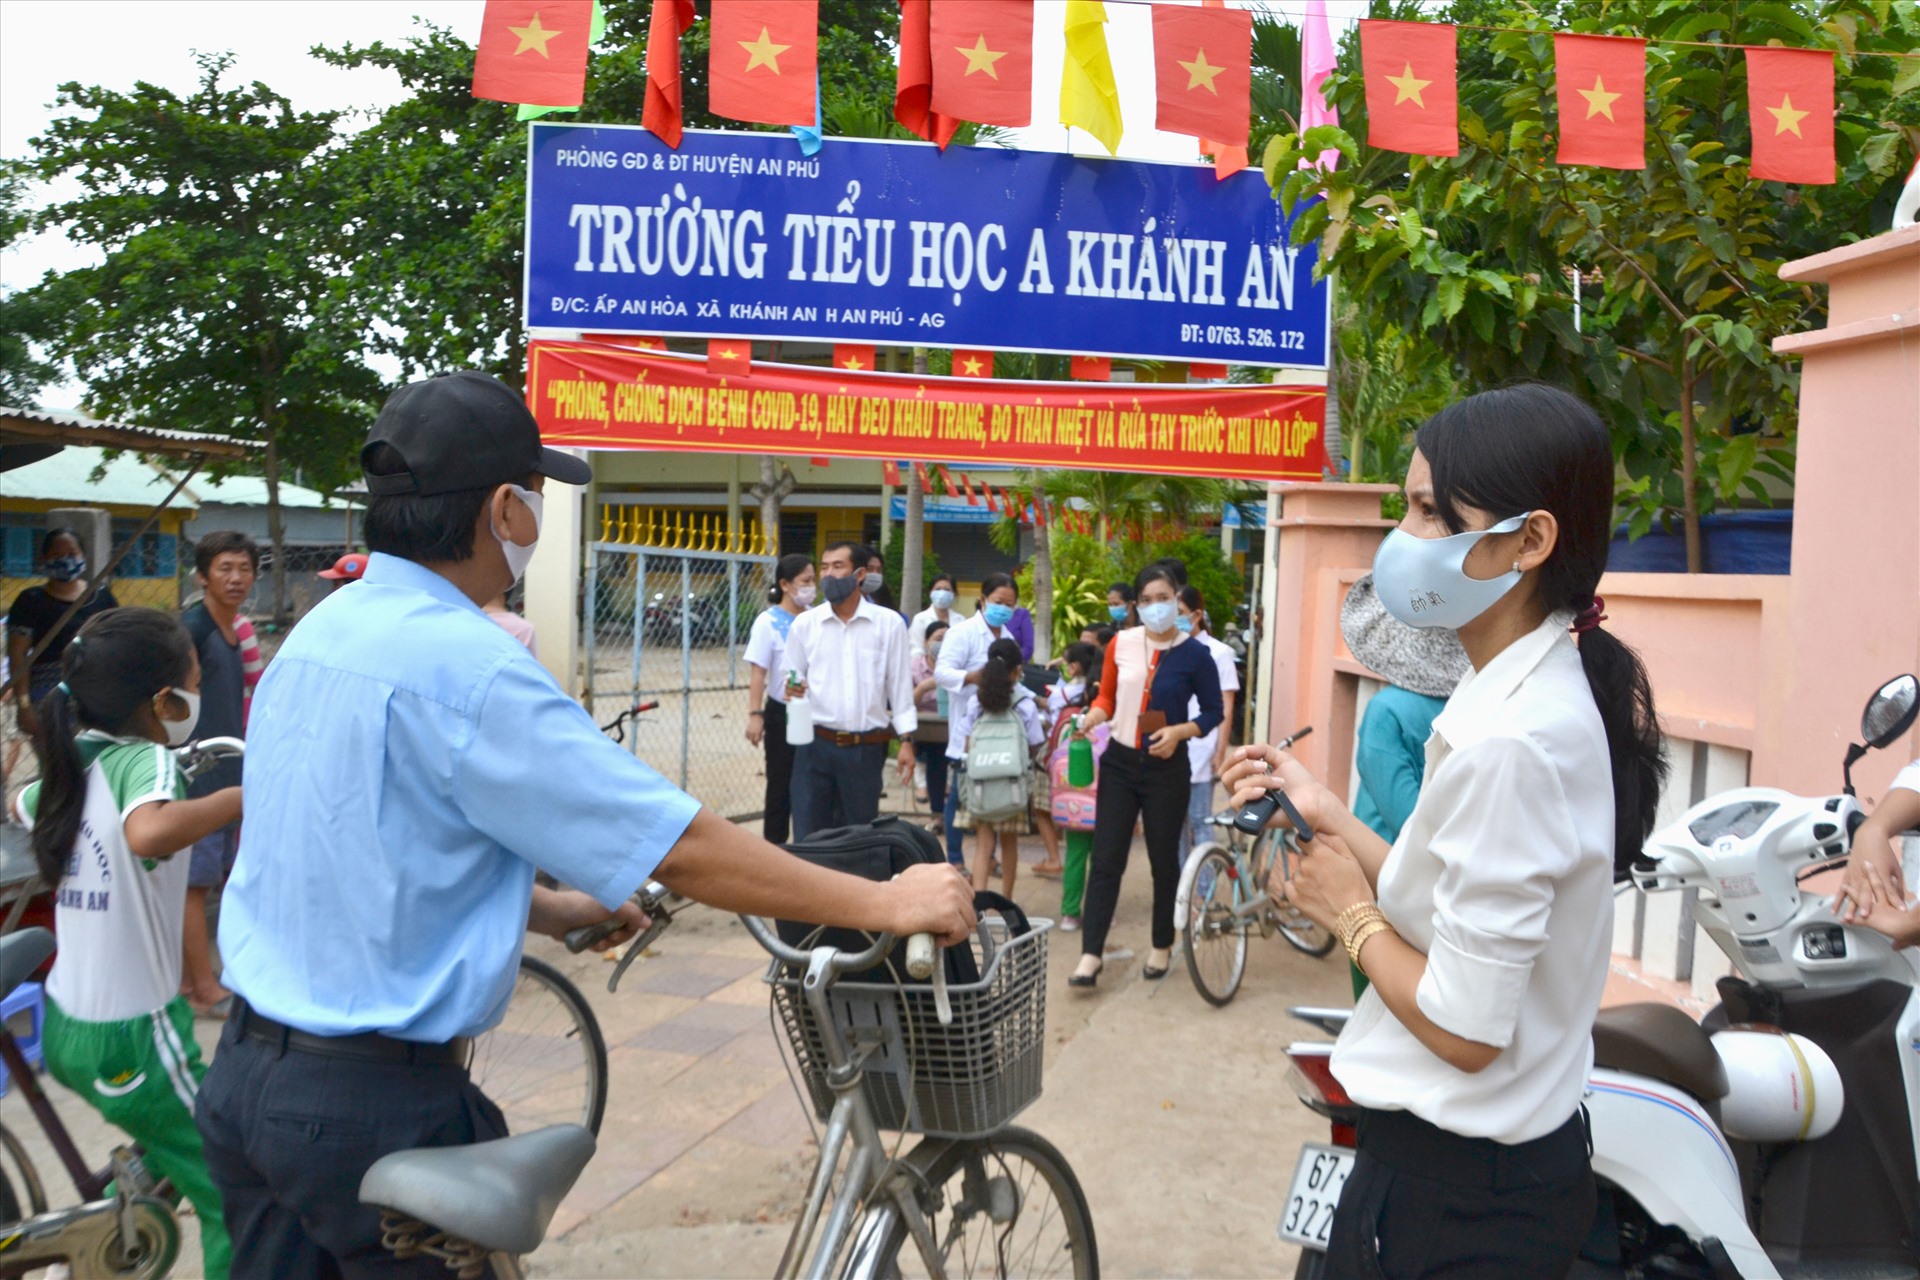 Trường Tiểu học A Khánh An, xã Khánh An, huyện An Phú, nơi có 399 học sinh người Việt đang sinh sống bên kia biên giới sang học. Ảnh: LT